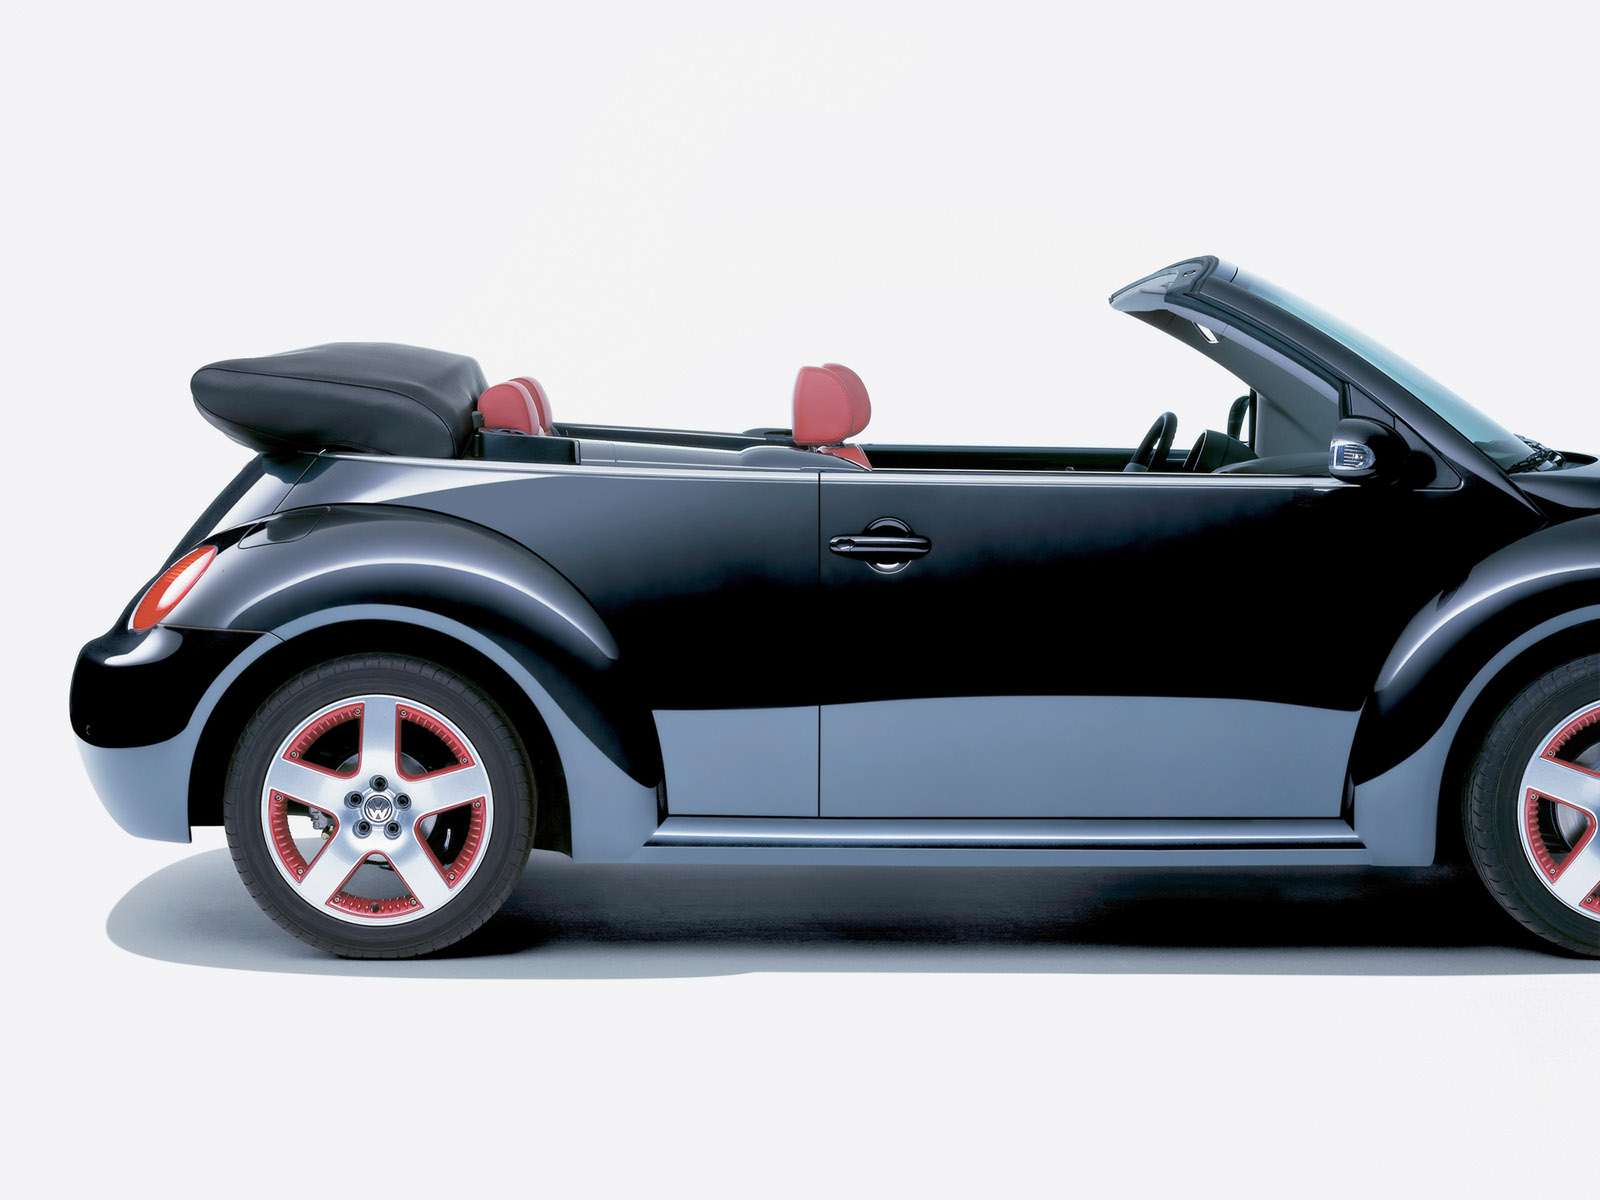 [2005-Volkswagen-New-Beetle-Cabriolet-Dark-Flint-S-td-1600x1200.jpg]